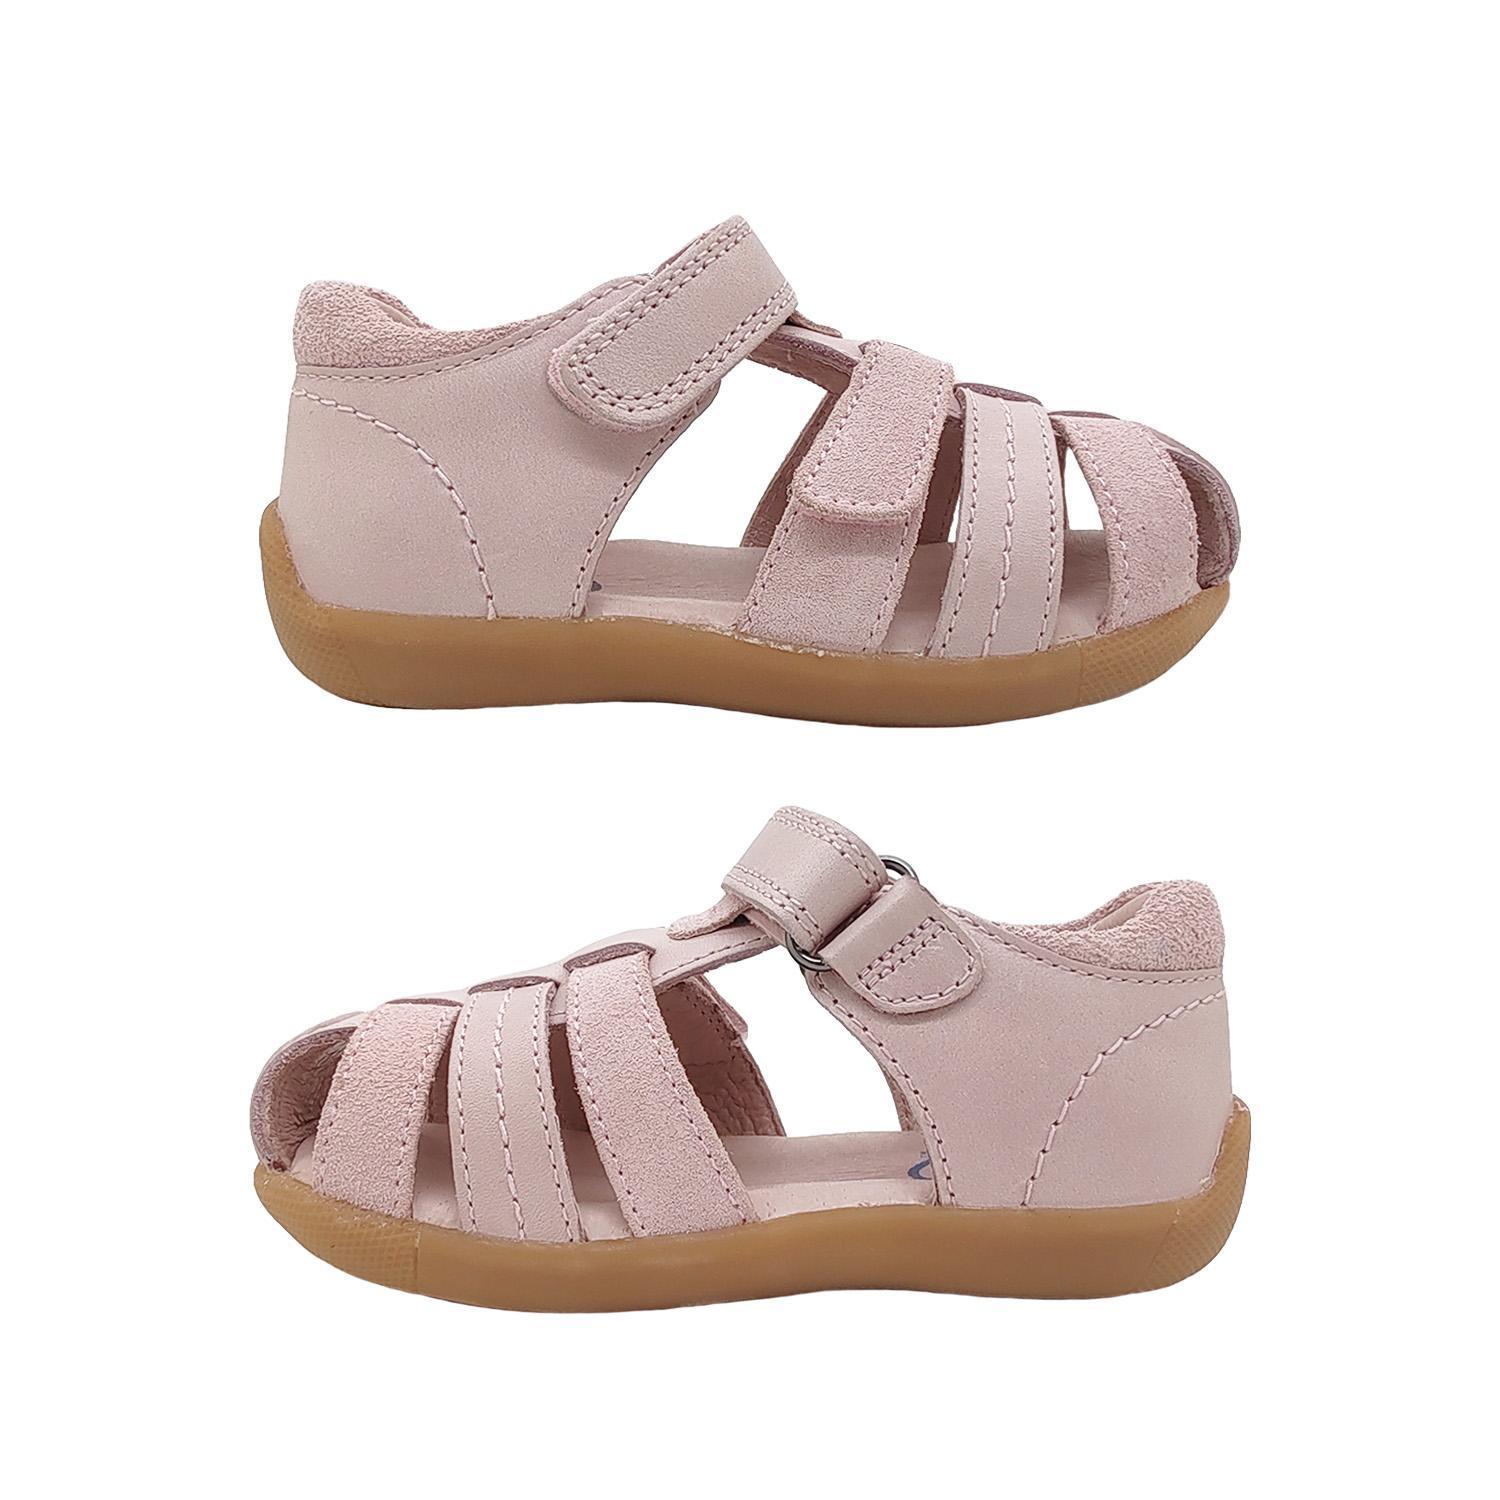 Surefit Alex Little Girls Sandals Leather Upper Toddler Back in Toe Cover Adjust-Pink-26